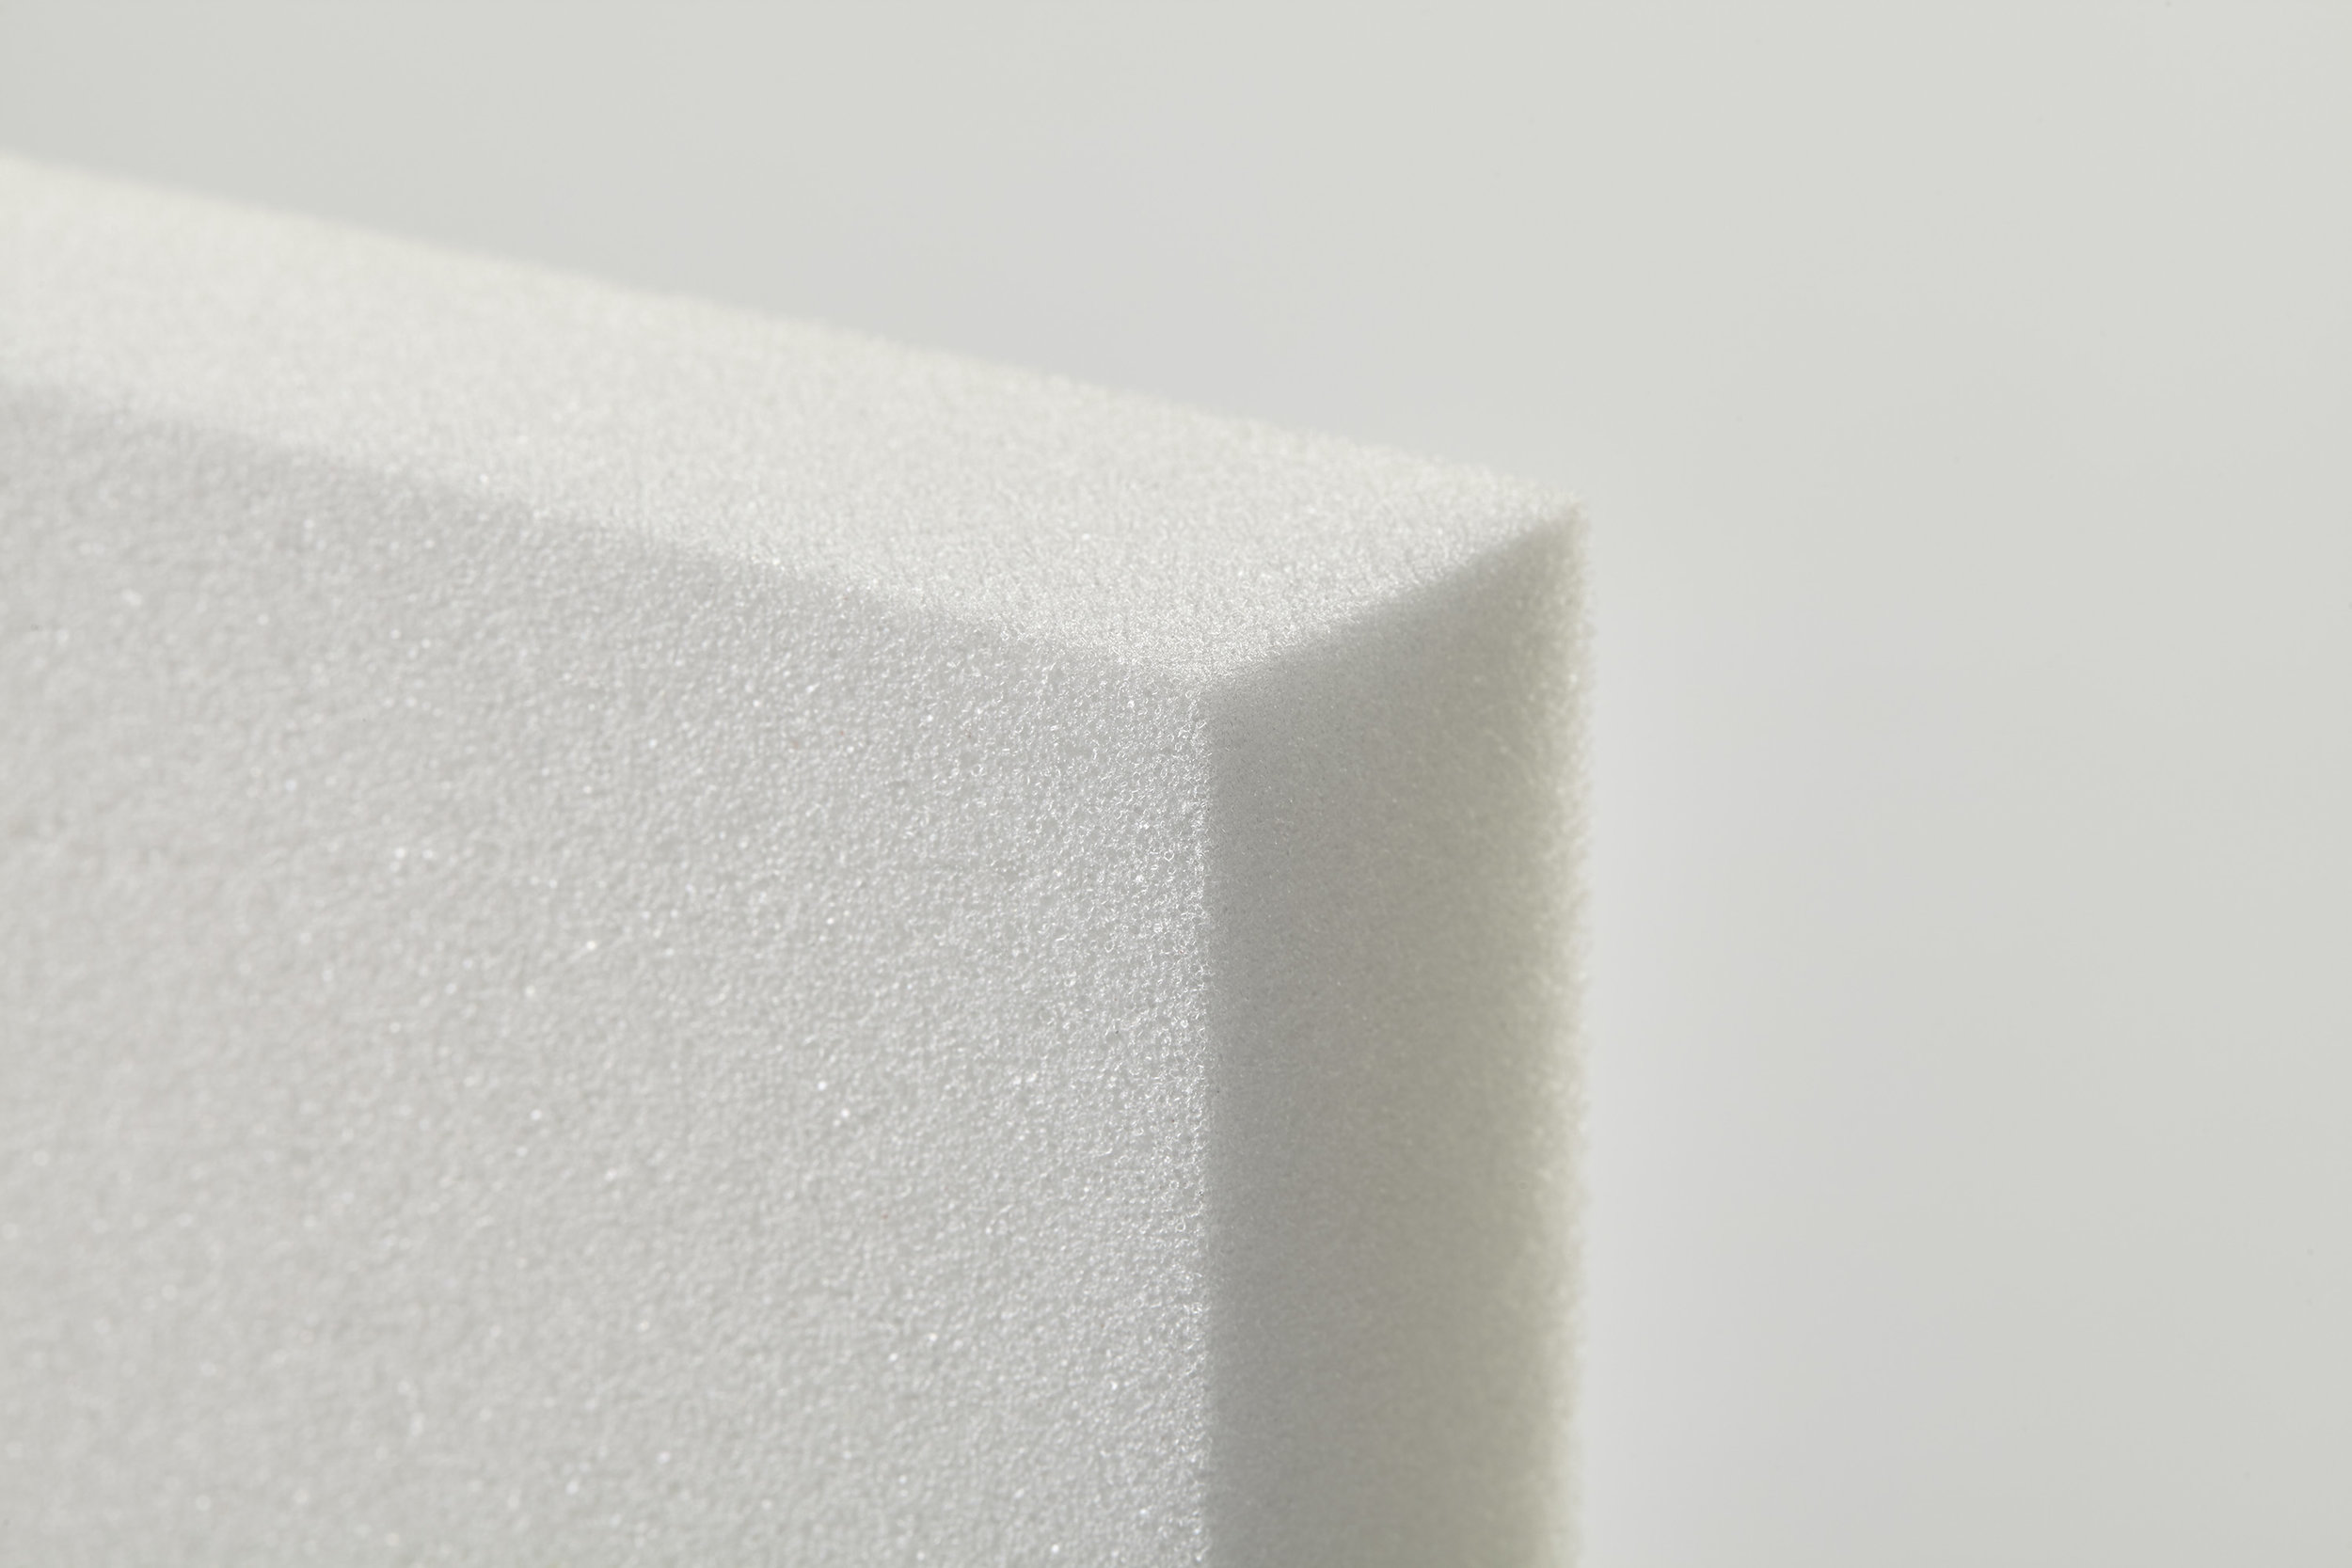 Seat Ultra - 2.8 LB density Upholstery Foam Sheets (Best) — Bestway Foam